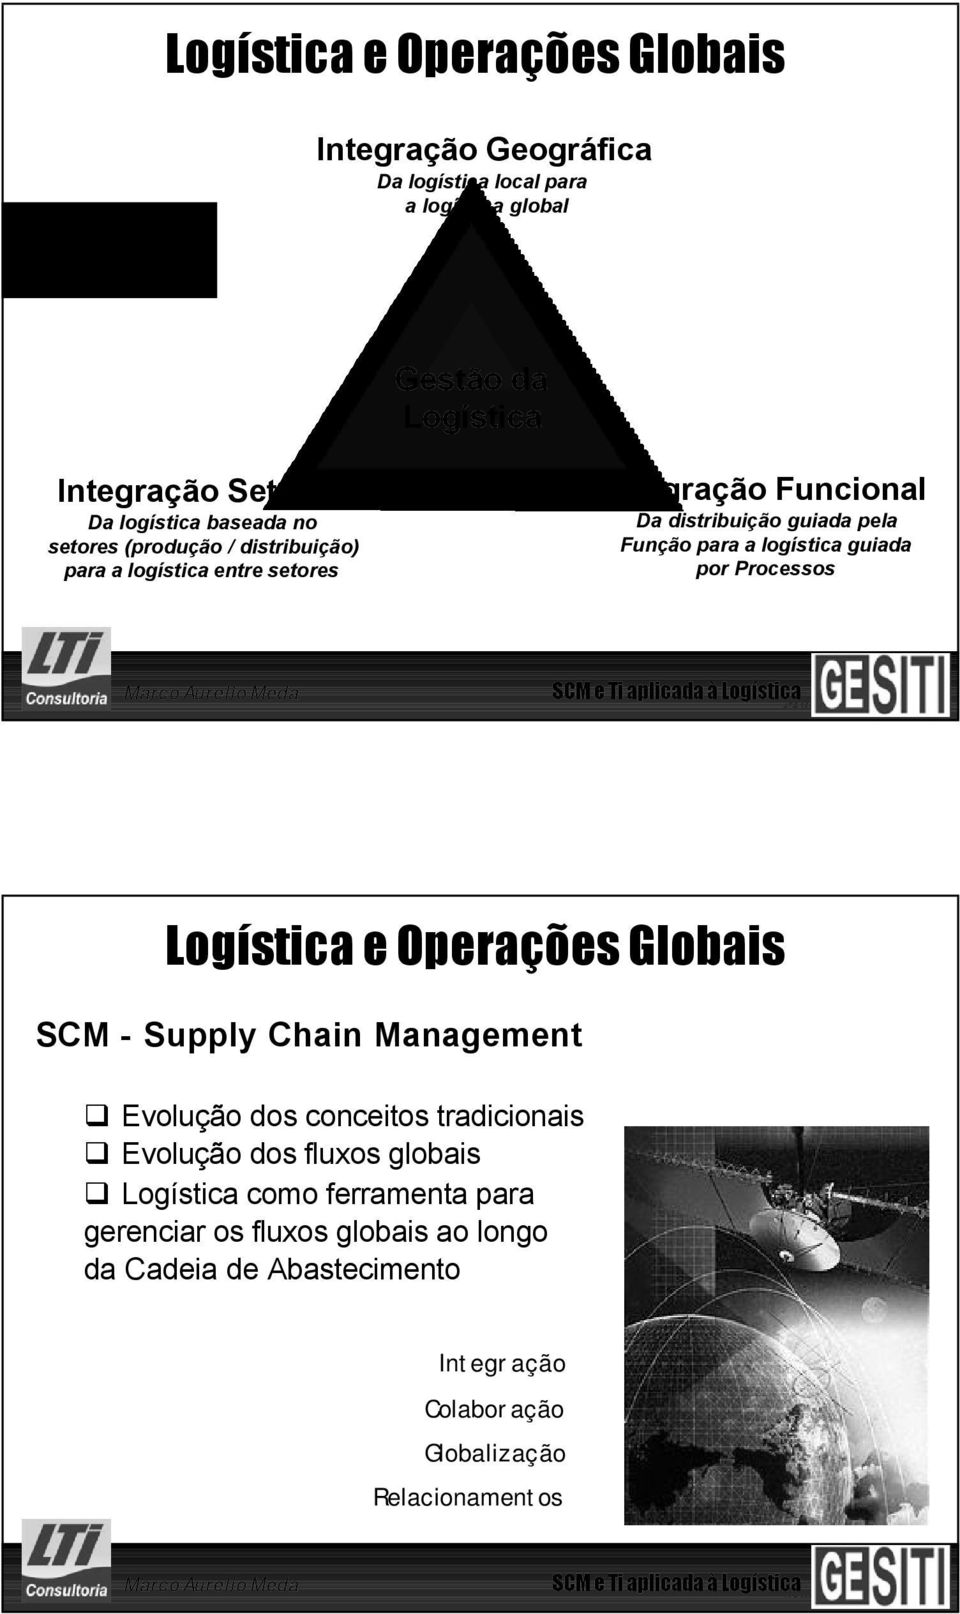 7 / 56 SCM e Ti aplicada à Logística Logística e Operações Globais SCM - Supply Chain Management Evolução dos conceitos tradicionais Evolução dos fluxos globais Logística